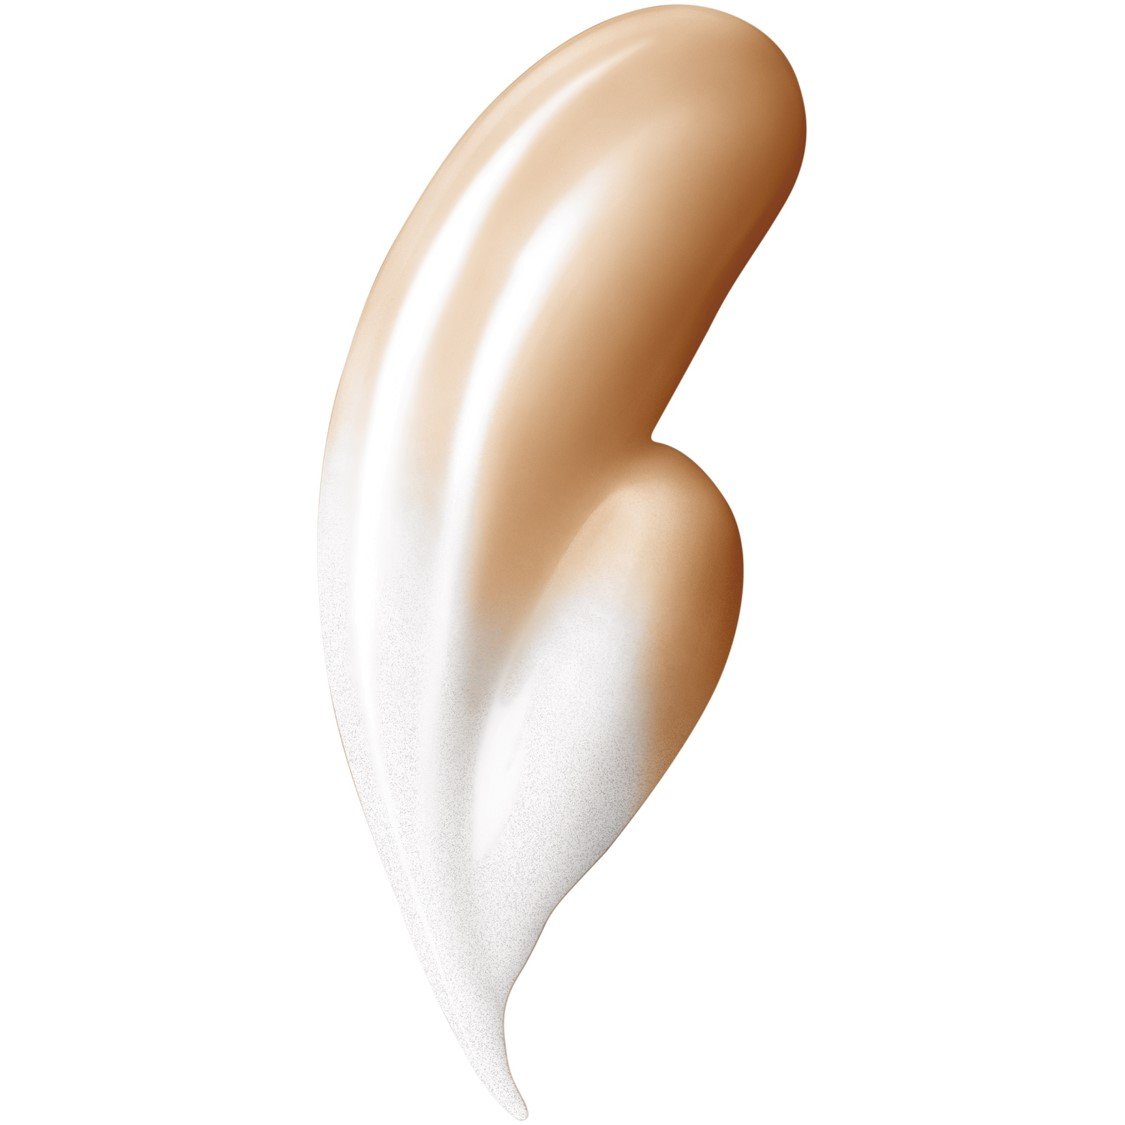 L'Oréal Paris Makeup Magic Skin Beautifier BB Cream Tinted Moisturizer Face Makeup, Medium, 1 fl. oz.